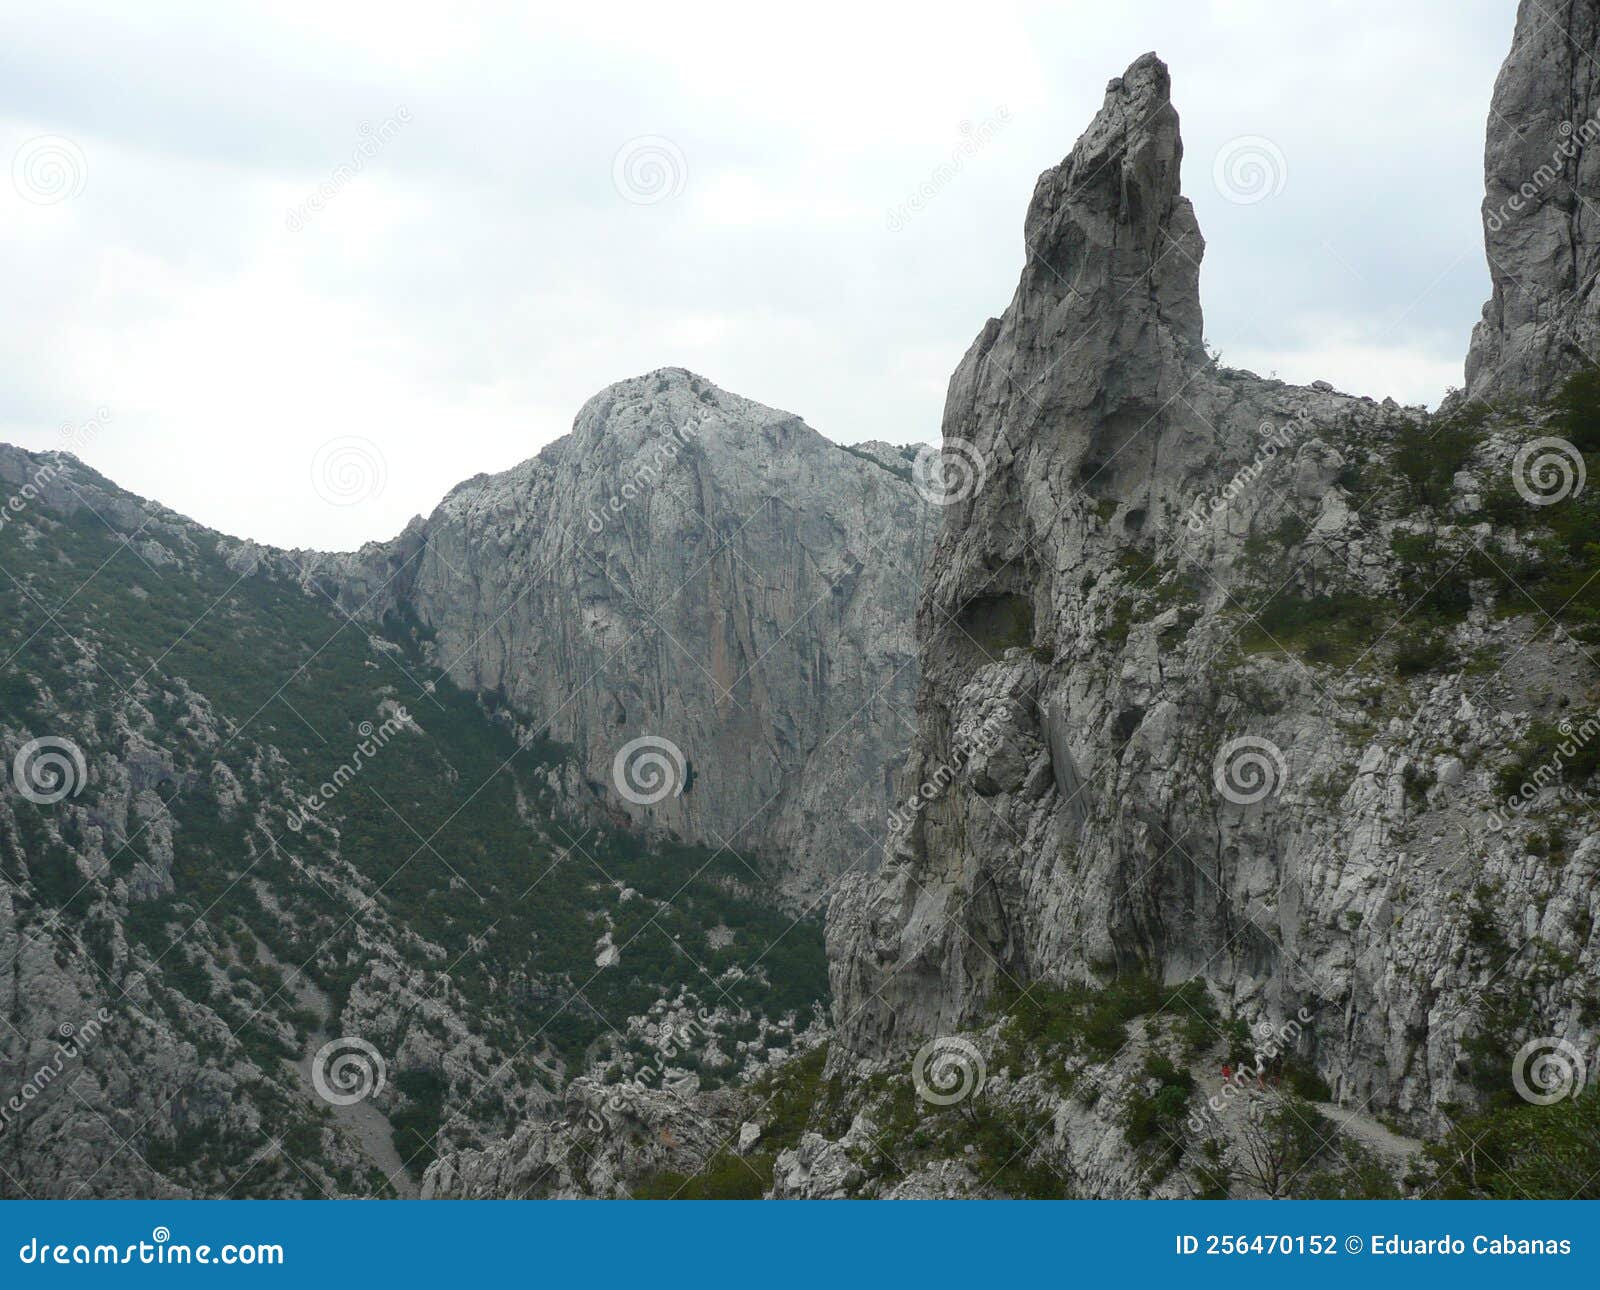 68 5.000 resultados de traducciÃÂ³n landscape of the mountains of paklenica national park in croatia